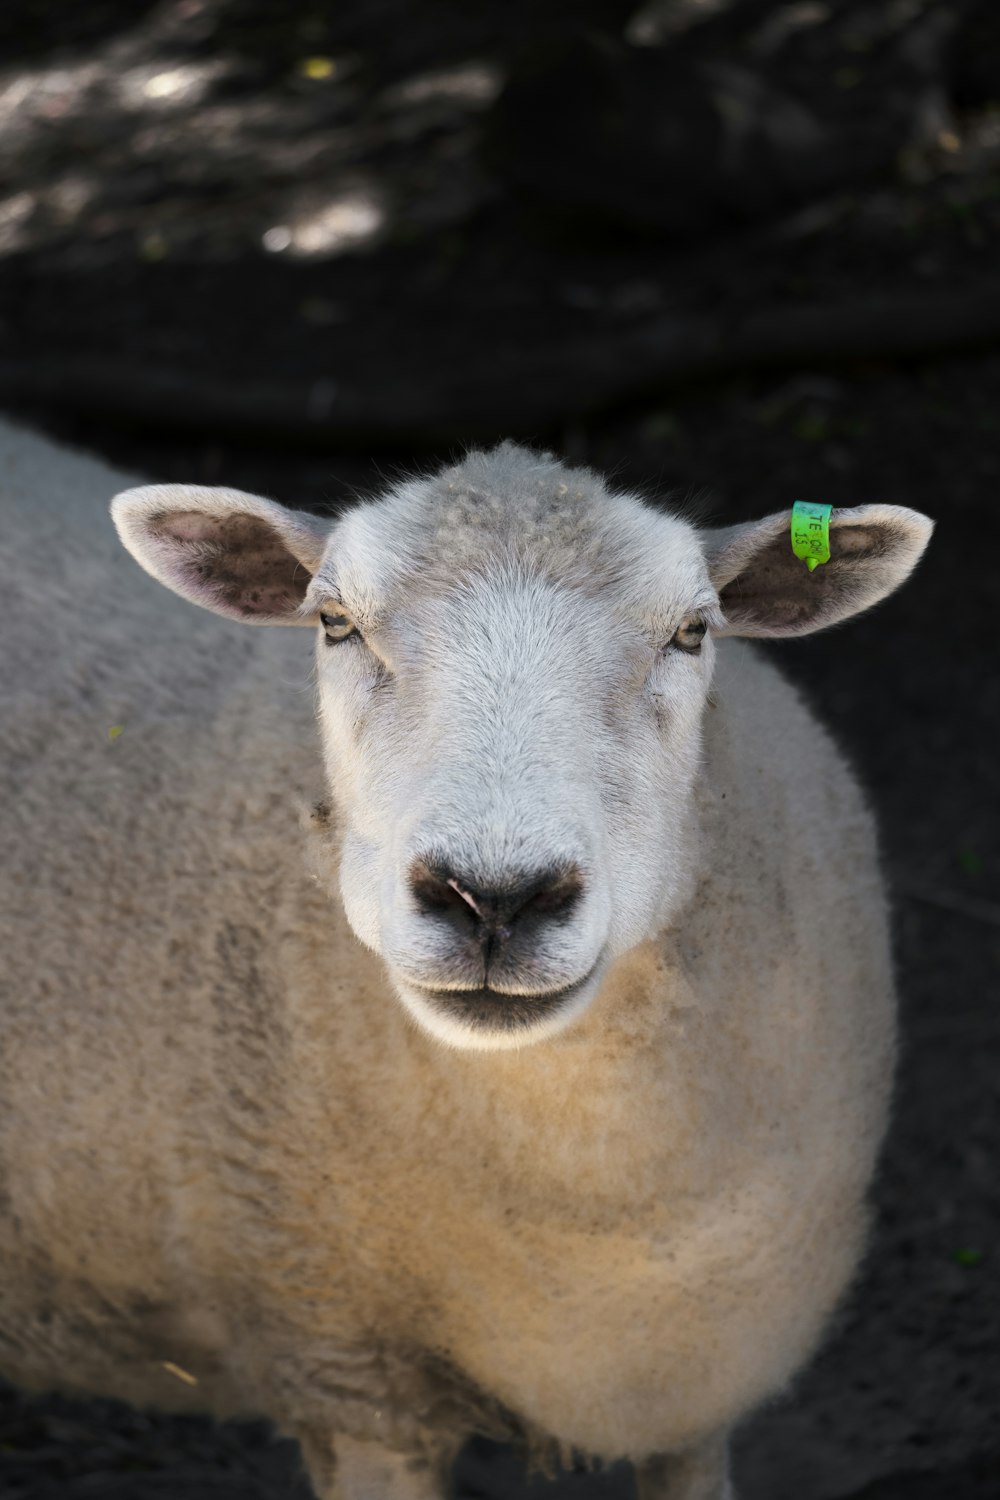 un primo piano di una pecora con un cartellino verde sull'orecchio